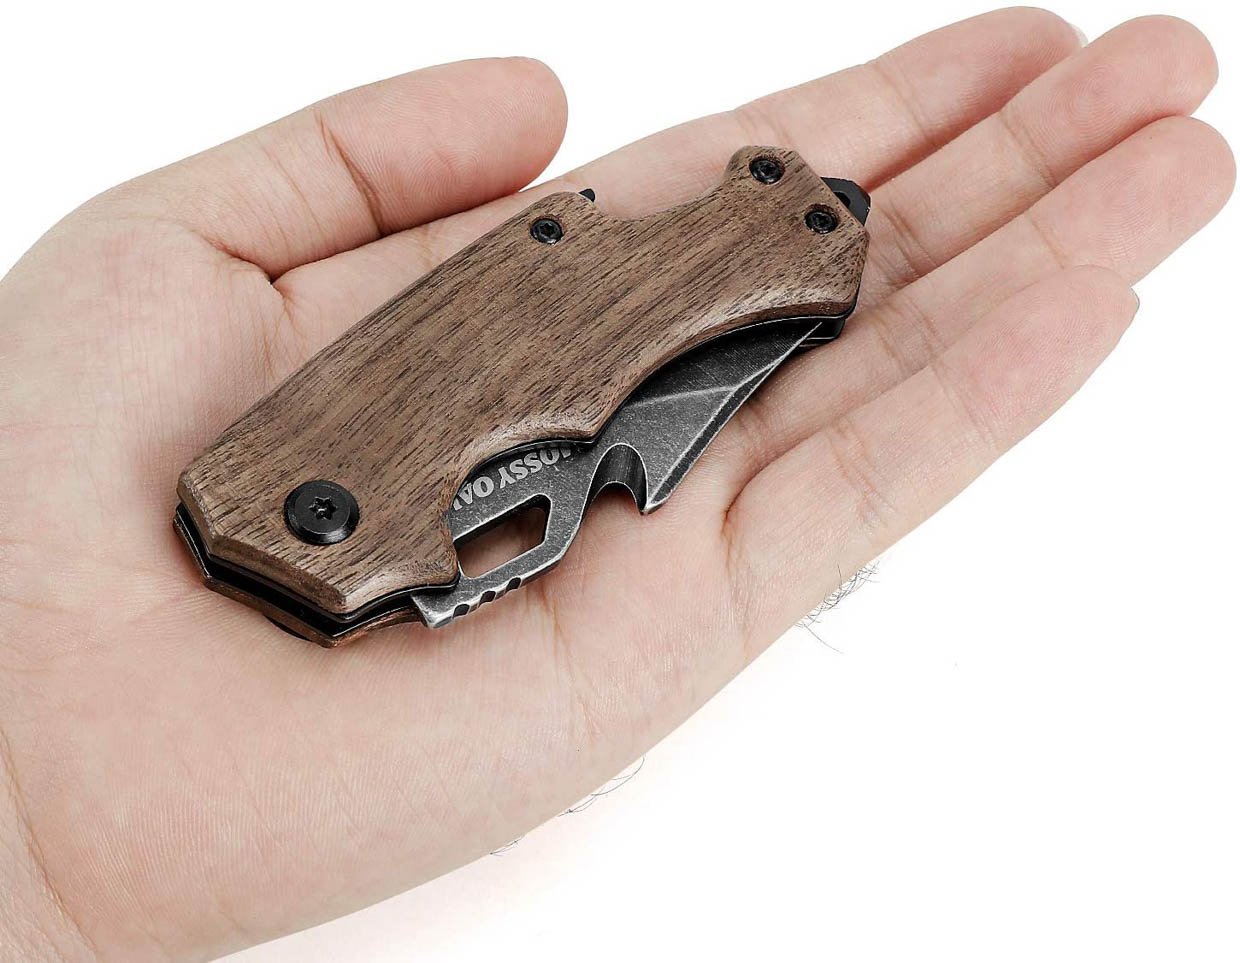 Mossy Oak Mini Folding Knife